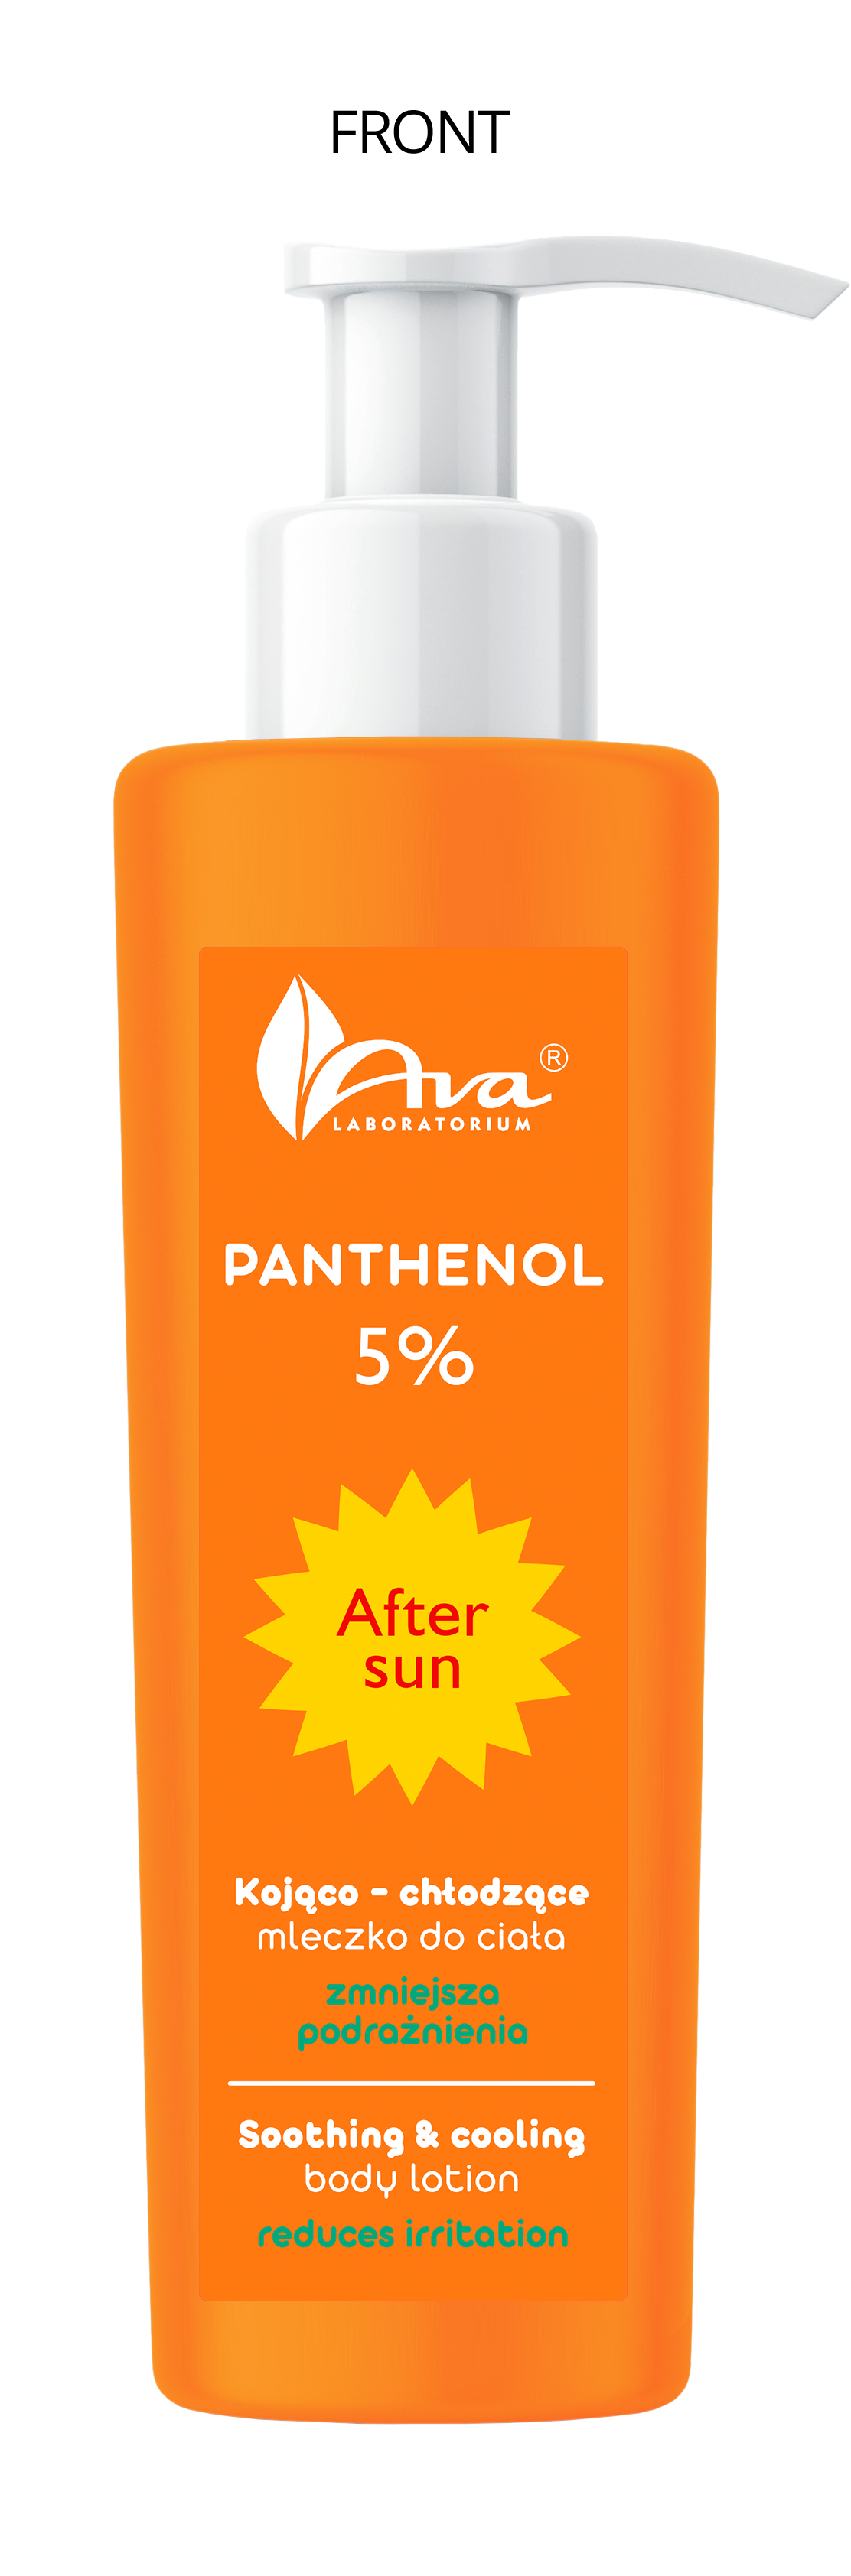 Panthenol 5% – Kojąco-chłodzące mleczko do ciała